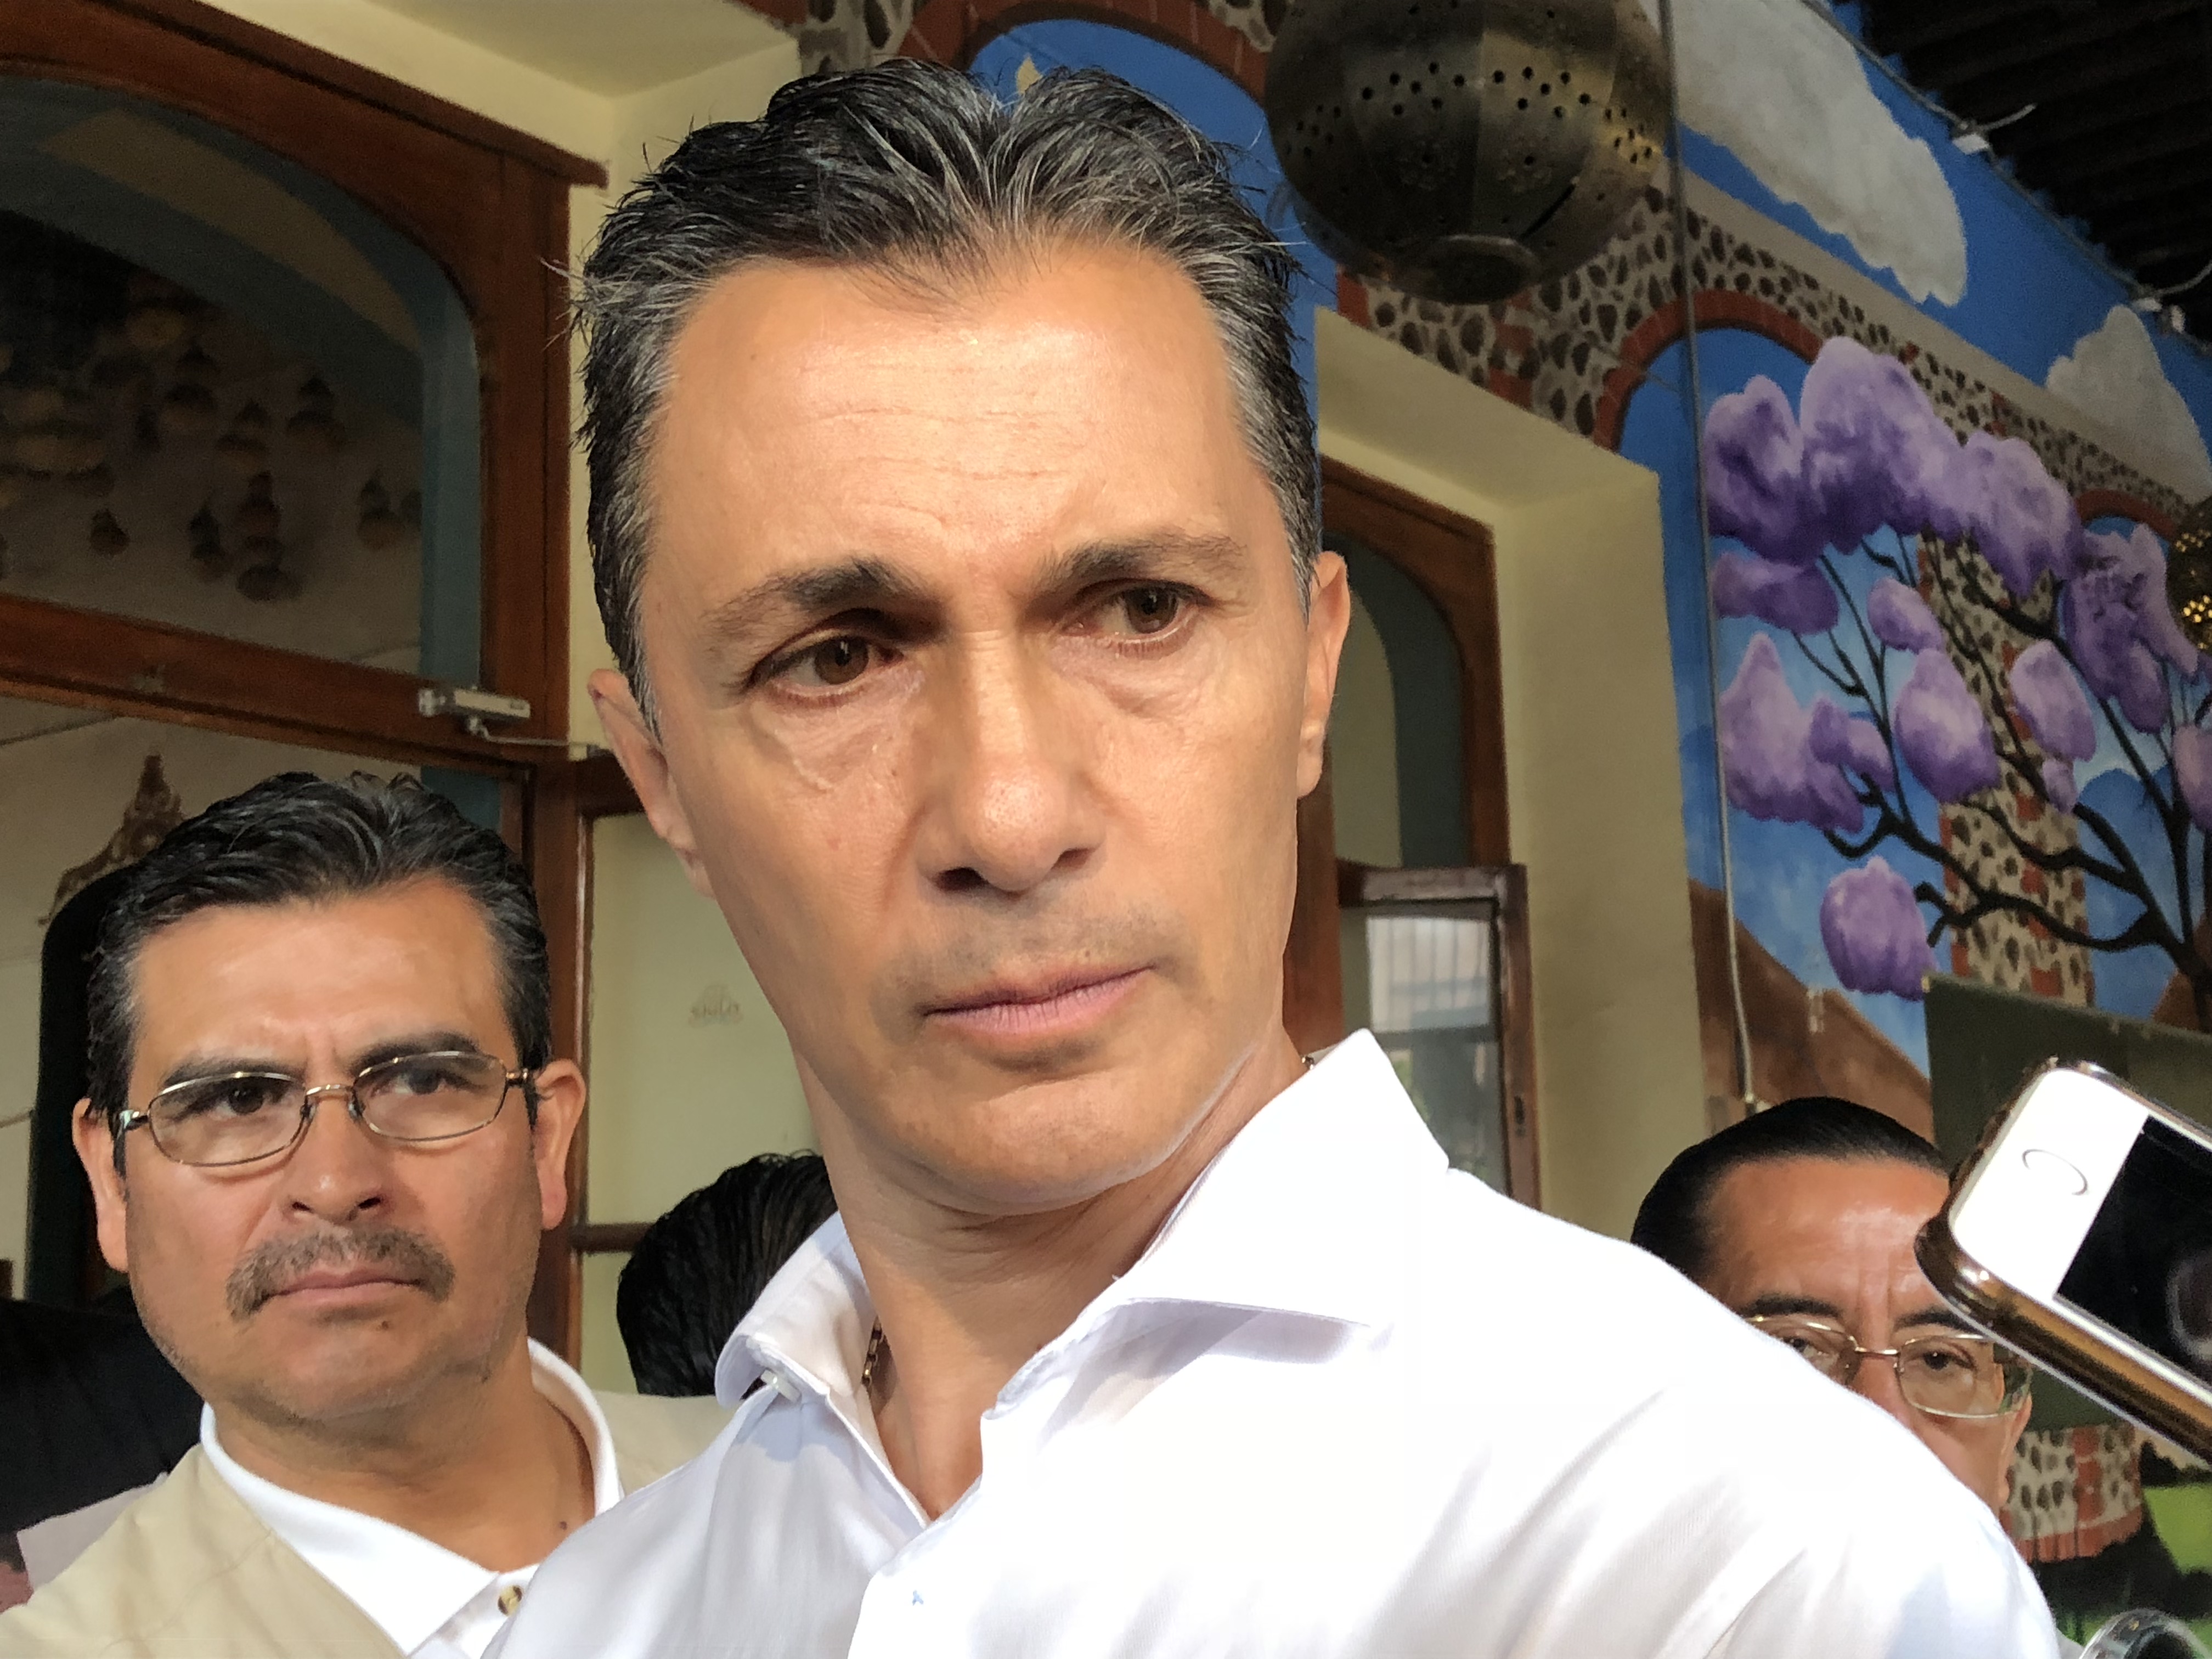  Adolfo Ríos defenderá la voluntad de los electores